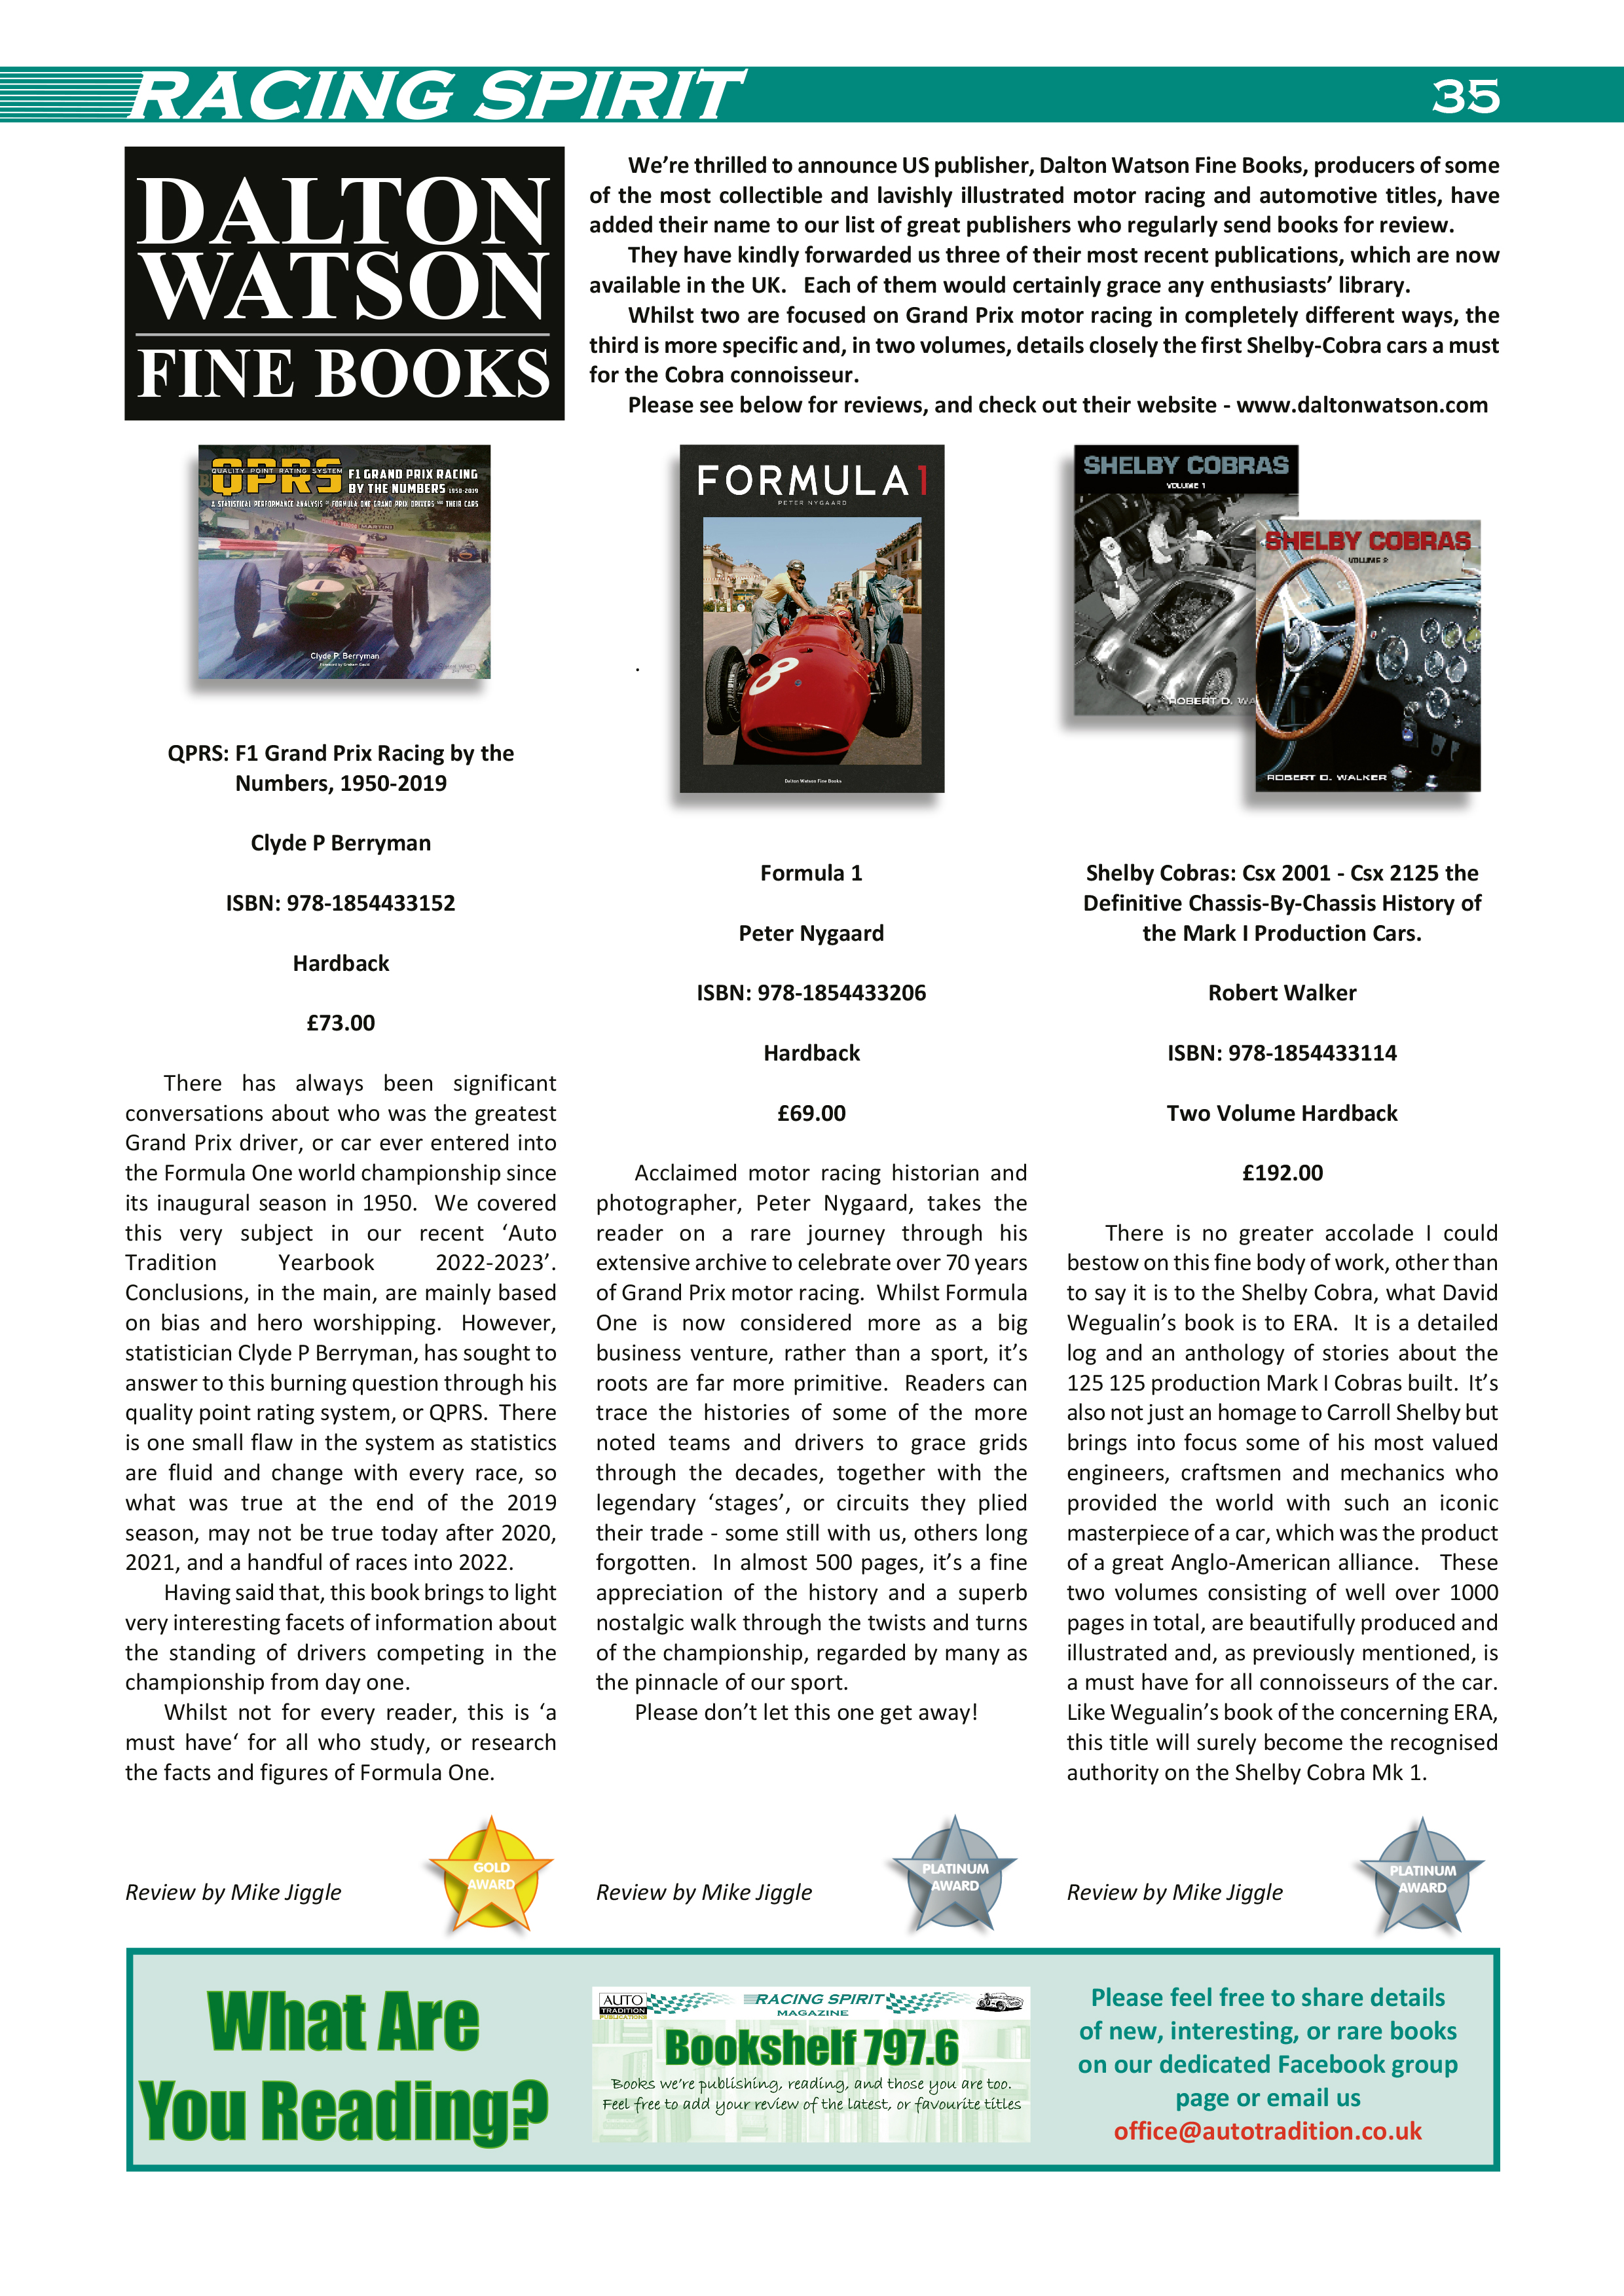 Formula 1 book review